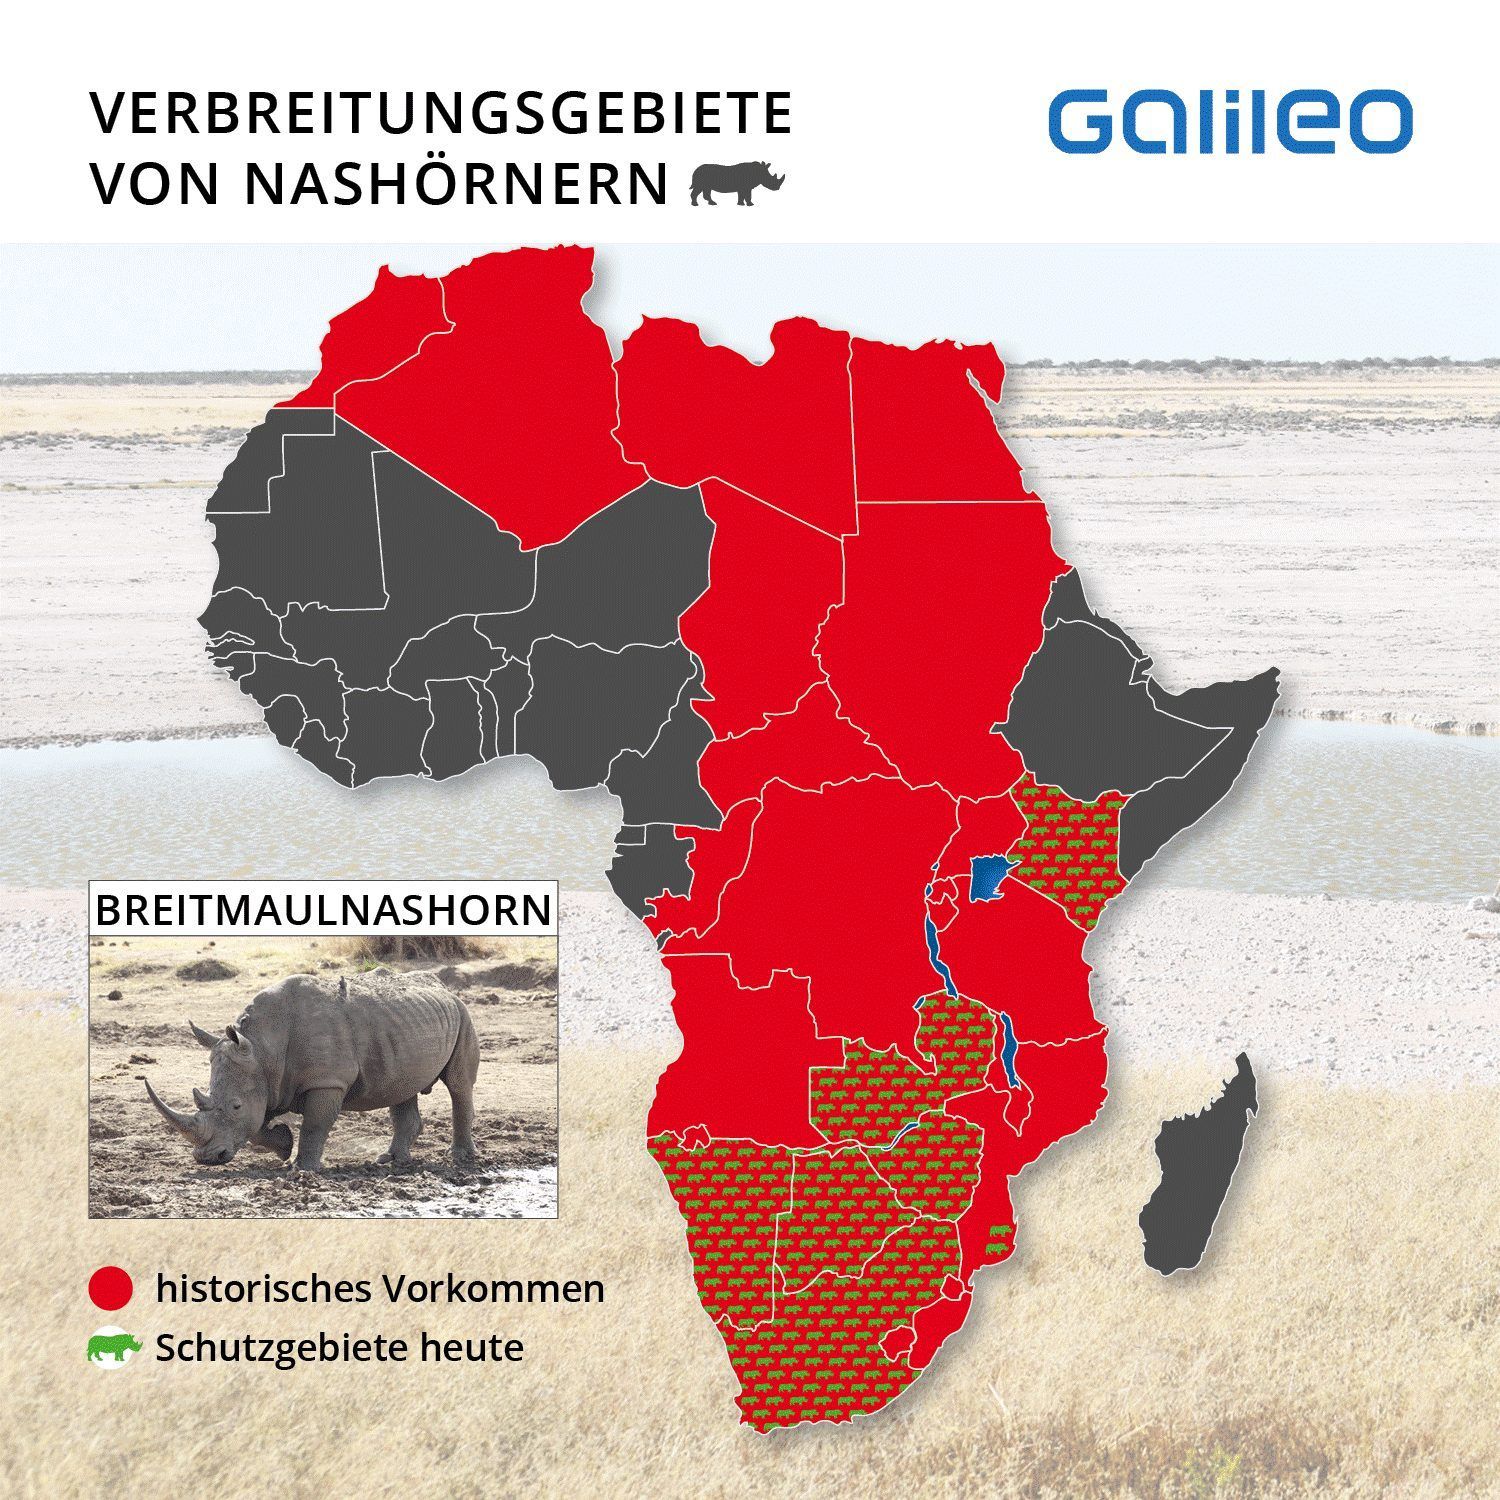 Historisch war das Breitmaulnashorn fast über den ganzen afrikanischen Kontinent verbreitet. Heute kommen die Dickhäuter nur noch in den südlichen Ländern zwischen Sambia und Südafrika vor.